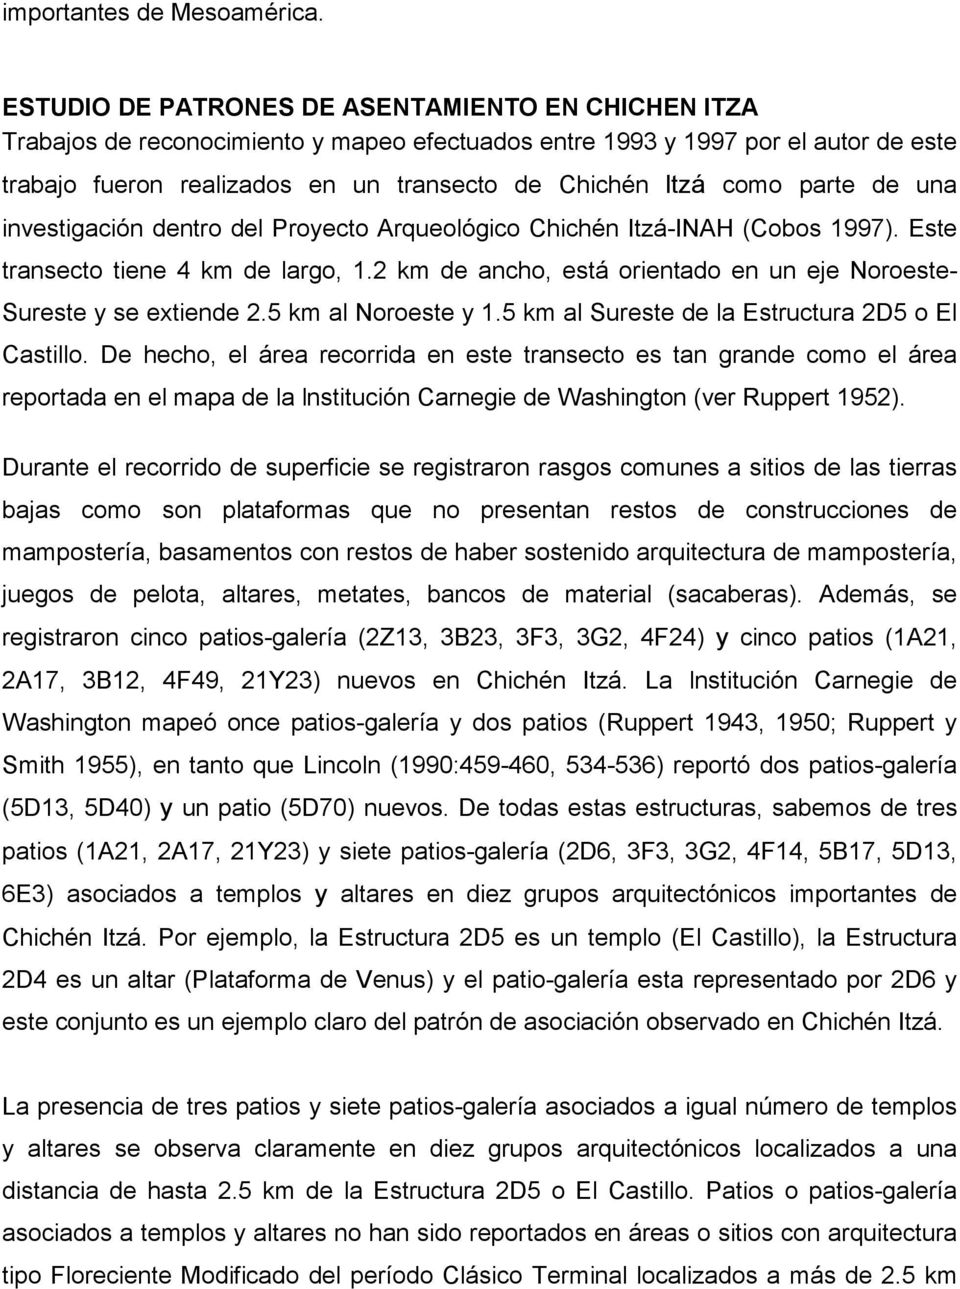 parte de una investigación dentro del Proyecto Arqueológico Chichén Itzá-INAH (Cobos 1997). Este transecto tiene 4 km de largo, 1.